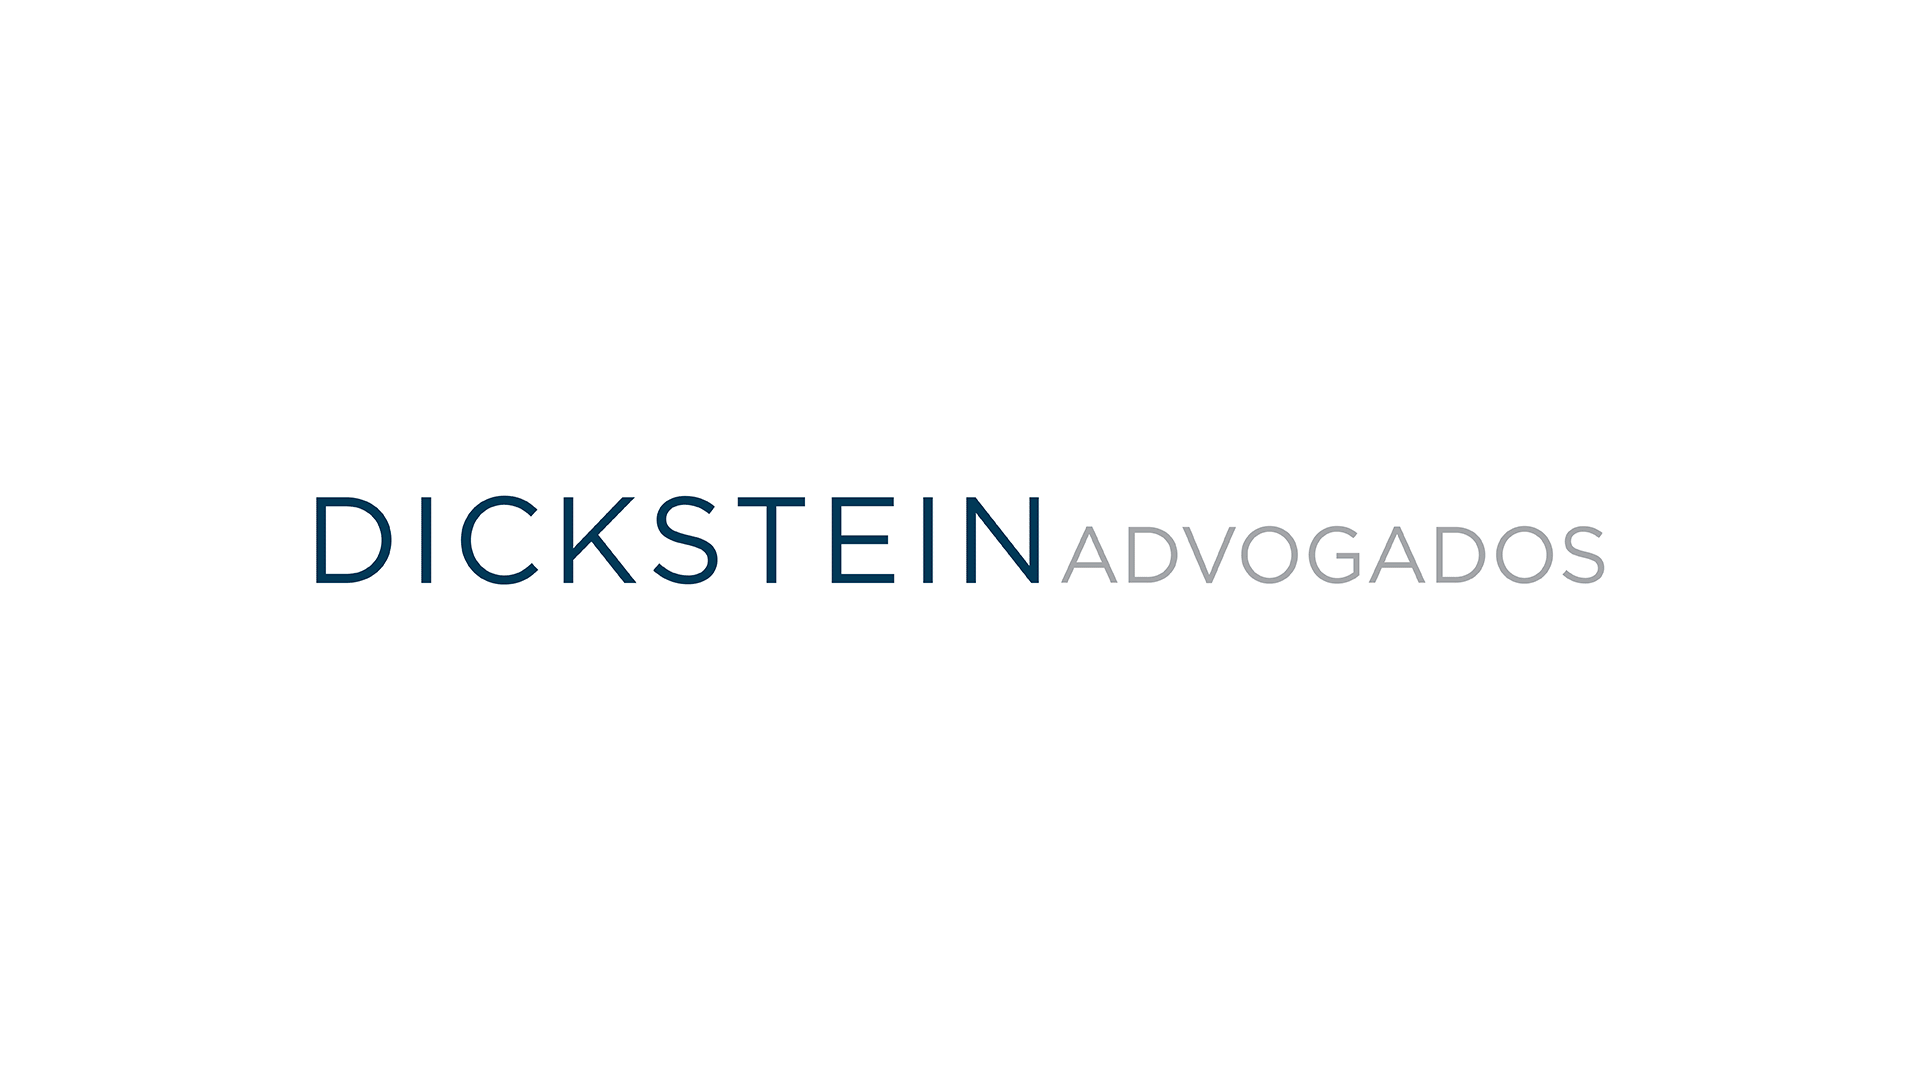 Case Dickstein Advogados | EnterDesign